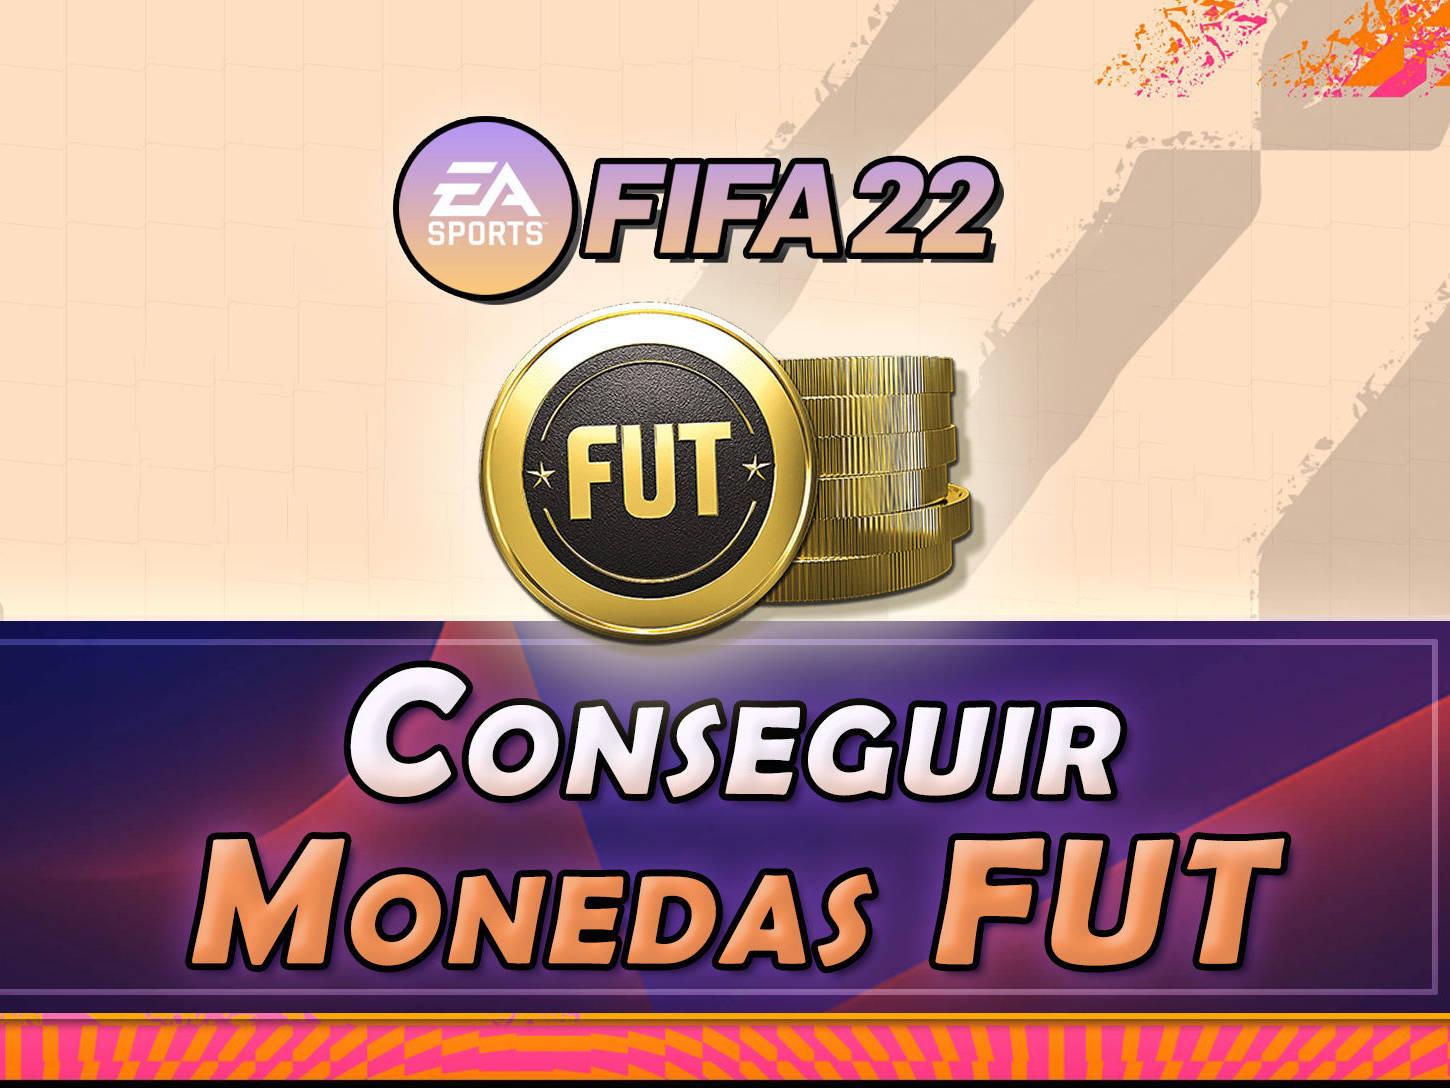 Asado precio Fruta vegetales FIFA 22: ¿Cómo conseguir monedas en FUT? - LEGAL